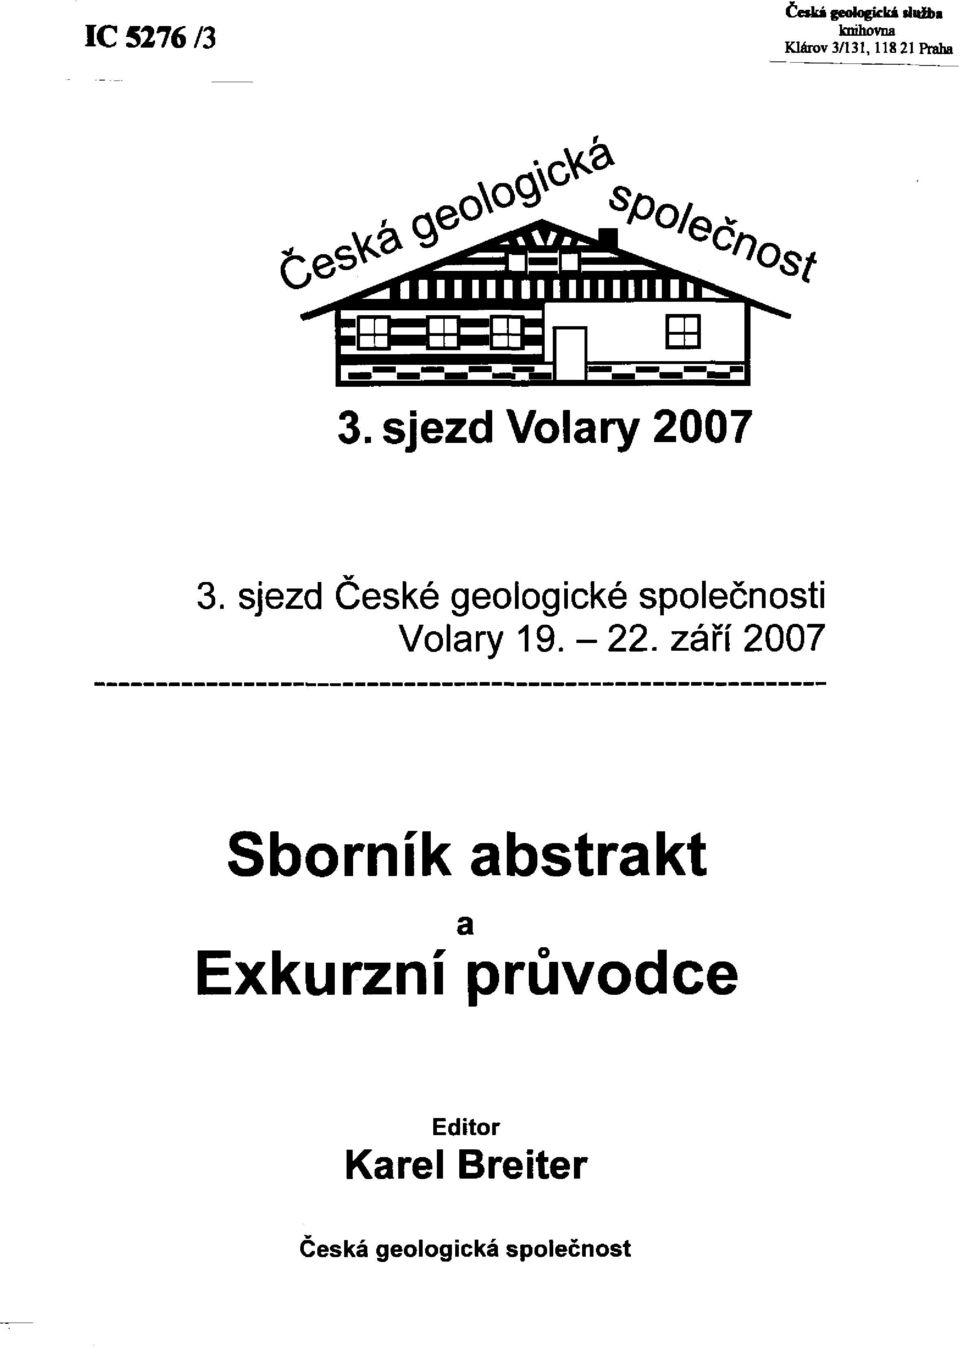 sjezd České geologické společnosti Volary 19. -22.